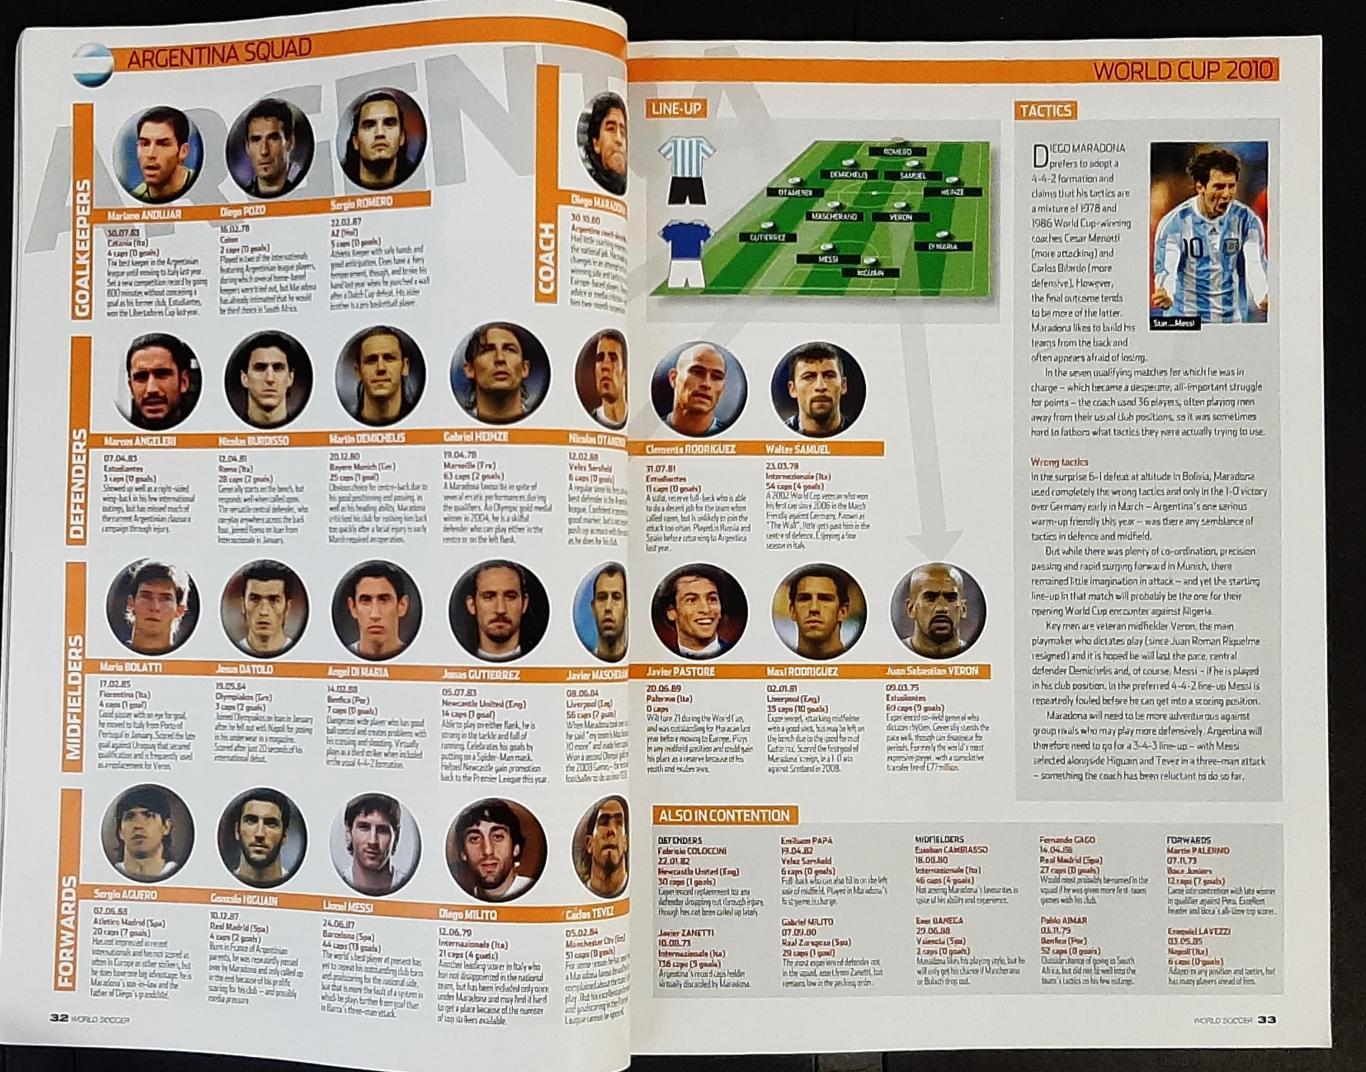 Журнал World soccer 2010 Представлення команд до чемпіонату світу 4